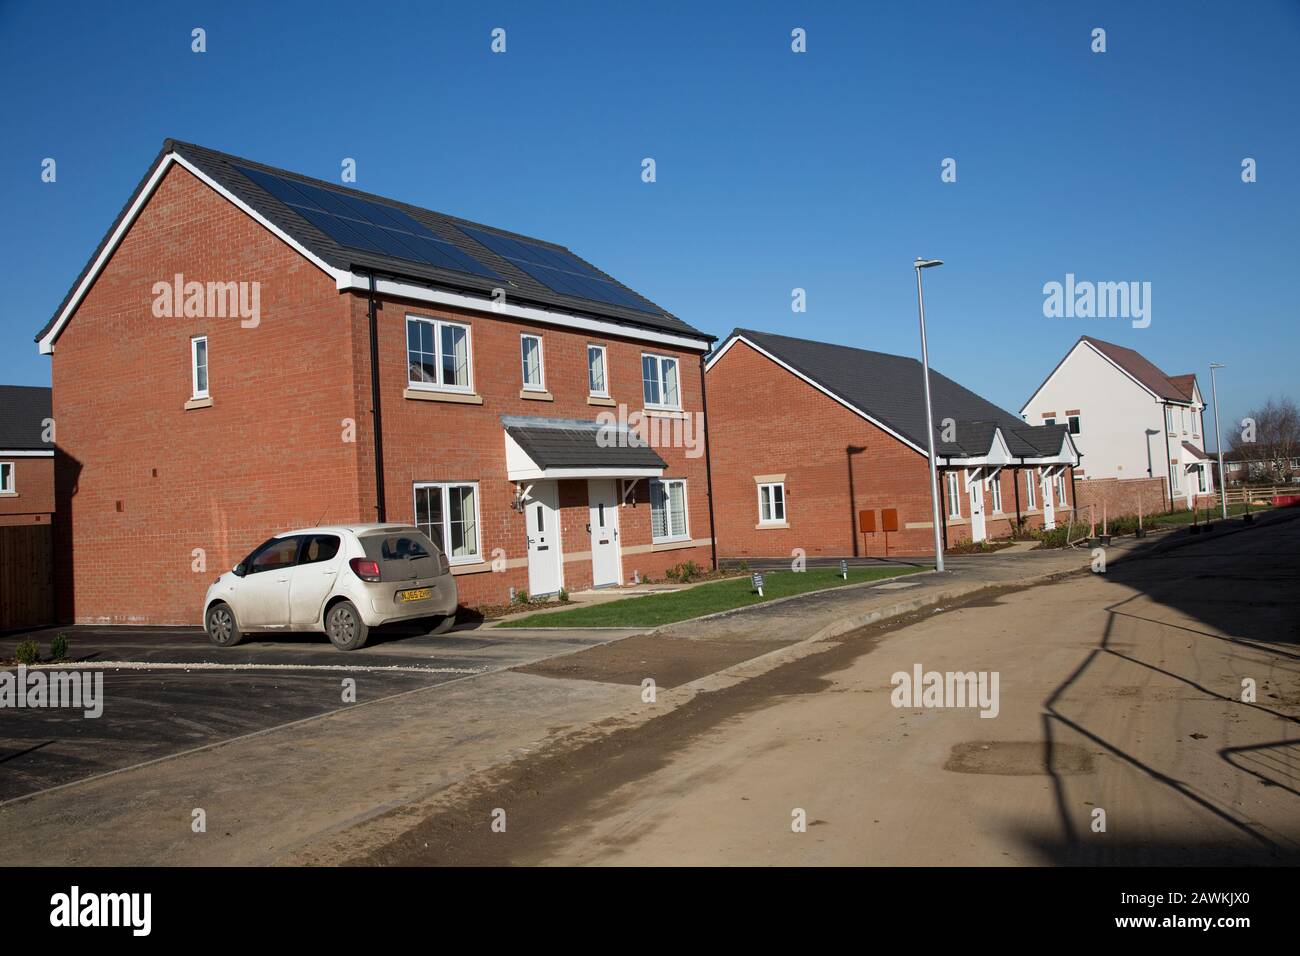 Nuove case in mattoni rossi su piccolo e ben disposto sviluppo con pannelli solari PV che sono obbligatori pm edilizia sociale. Foto Stock